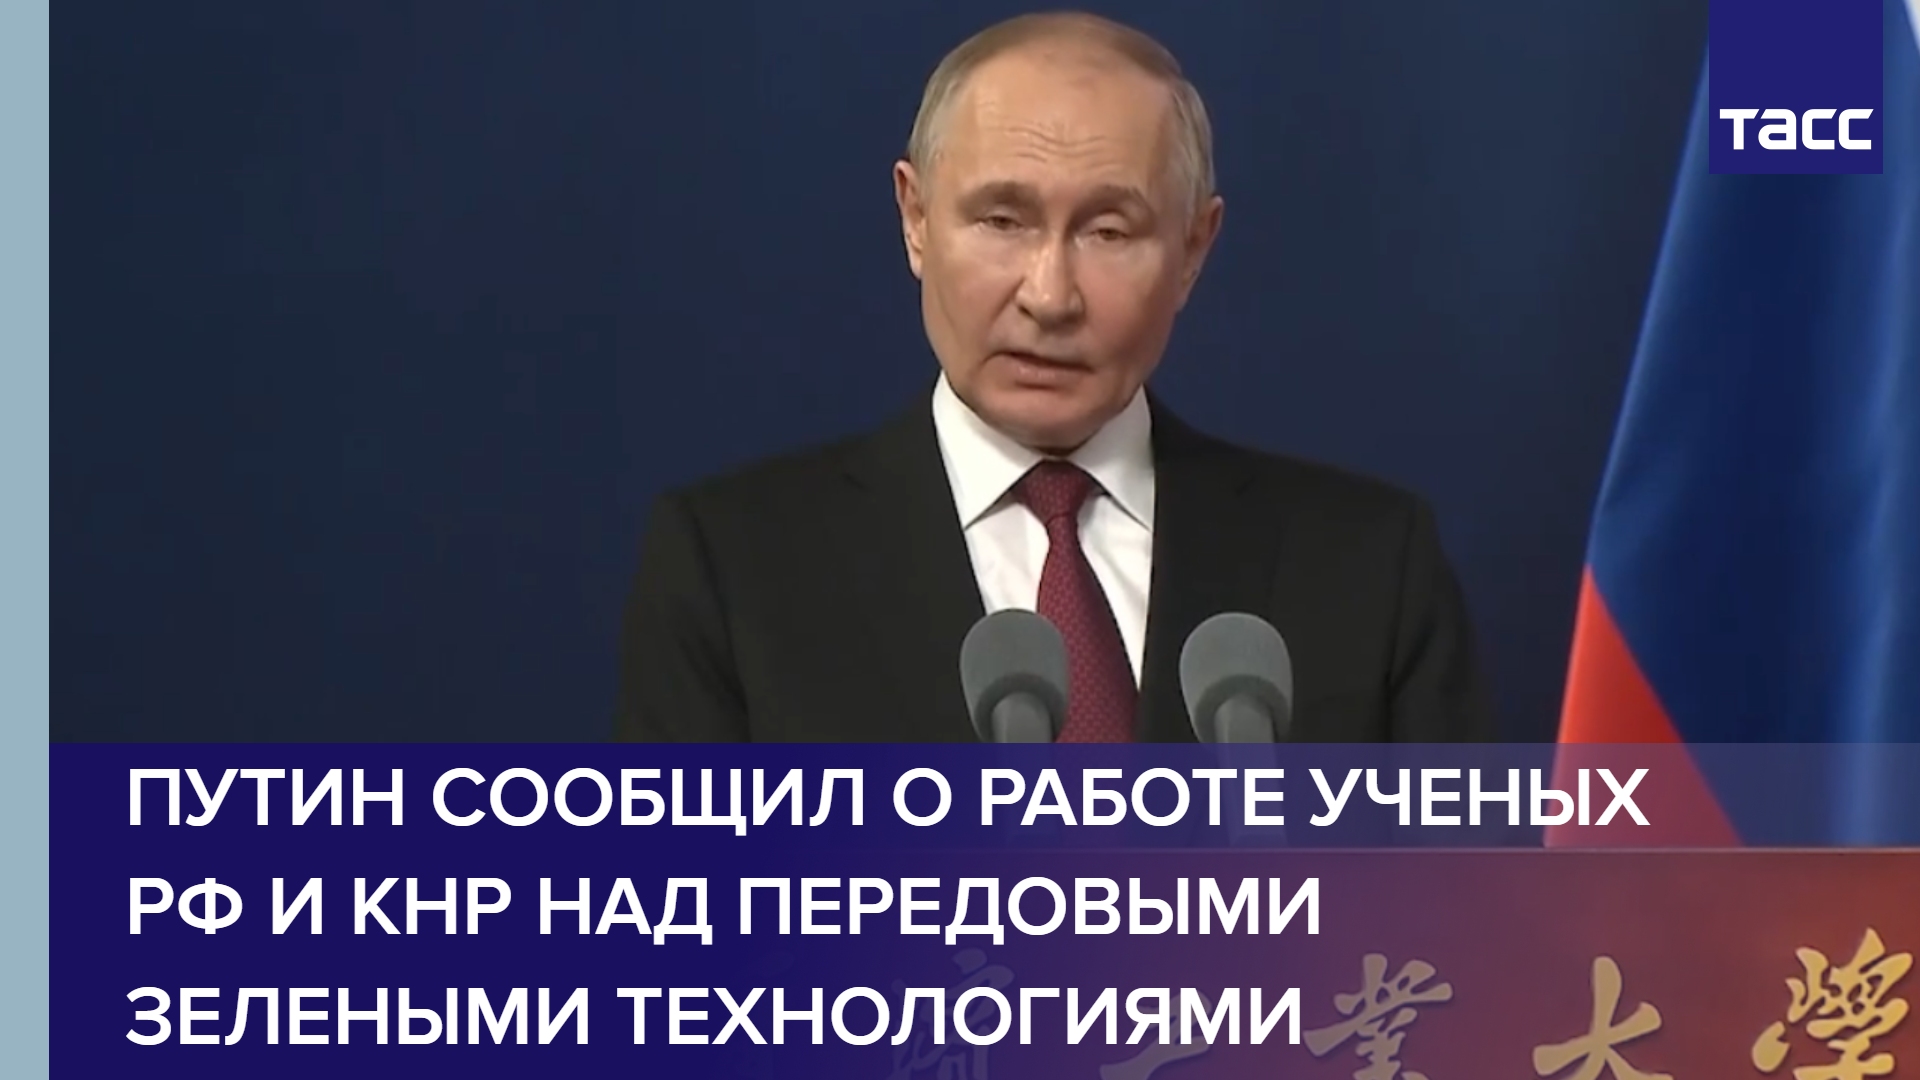 Путин сообщил о работе ученых РФ и КНР над передовыми зелеными технологиями